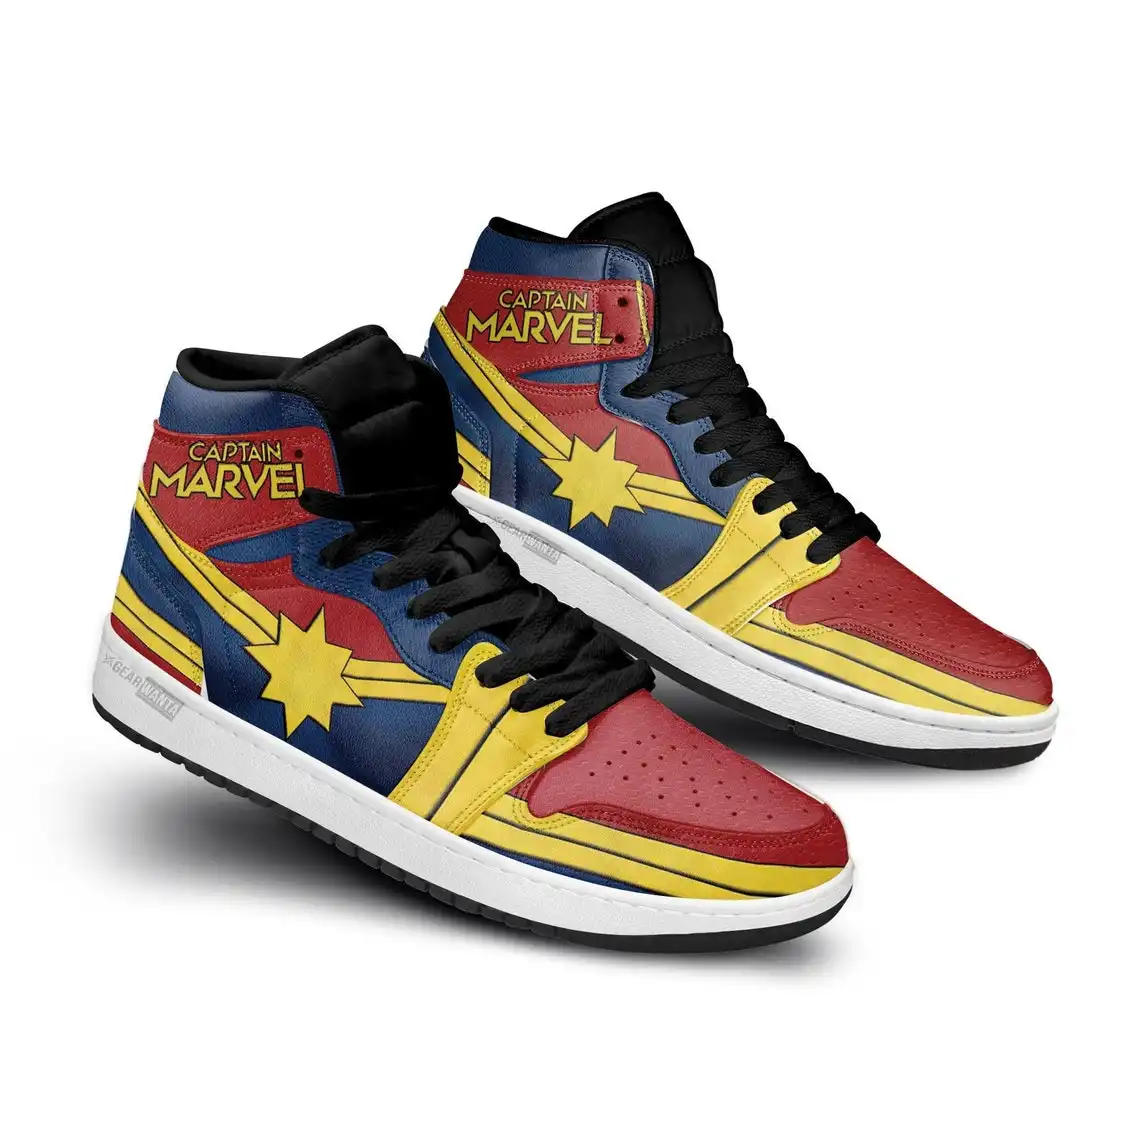 Avenger Captain Marvel Super Heroes For Movie Fans - Custom Anime Sneaker For Men And Women Air Jordan Shoes